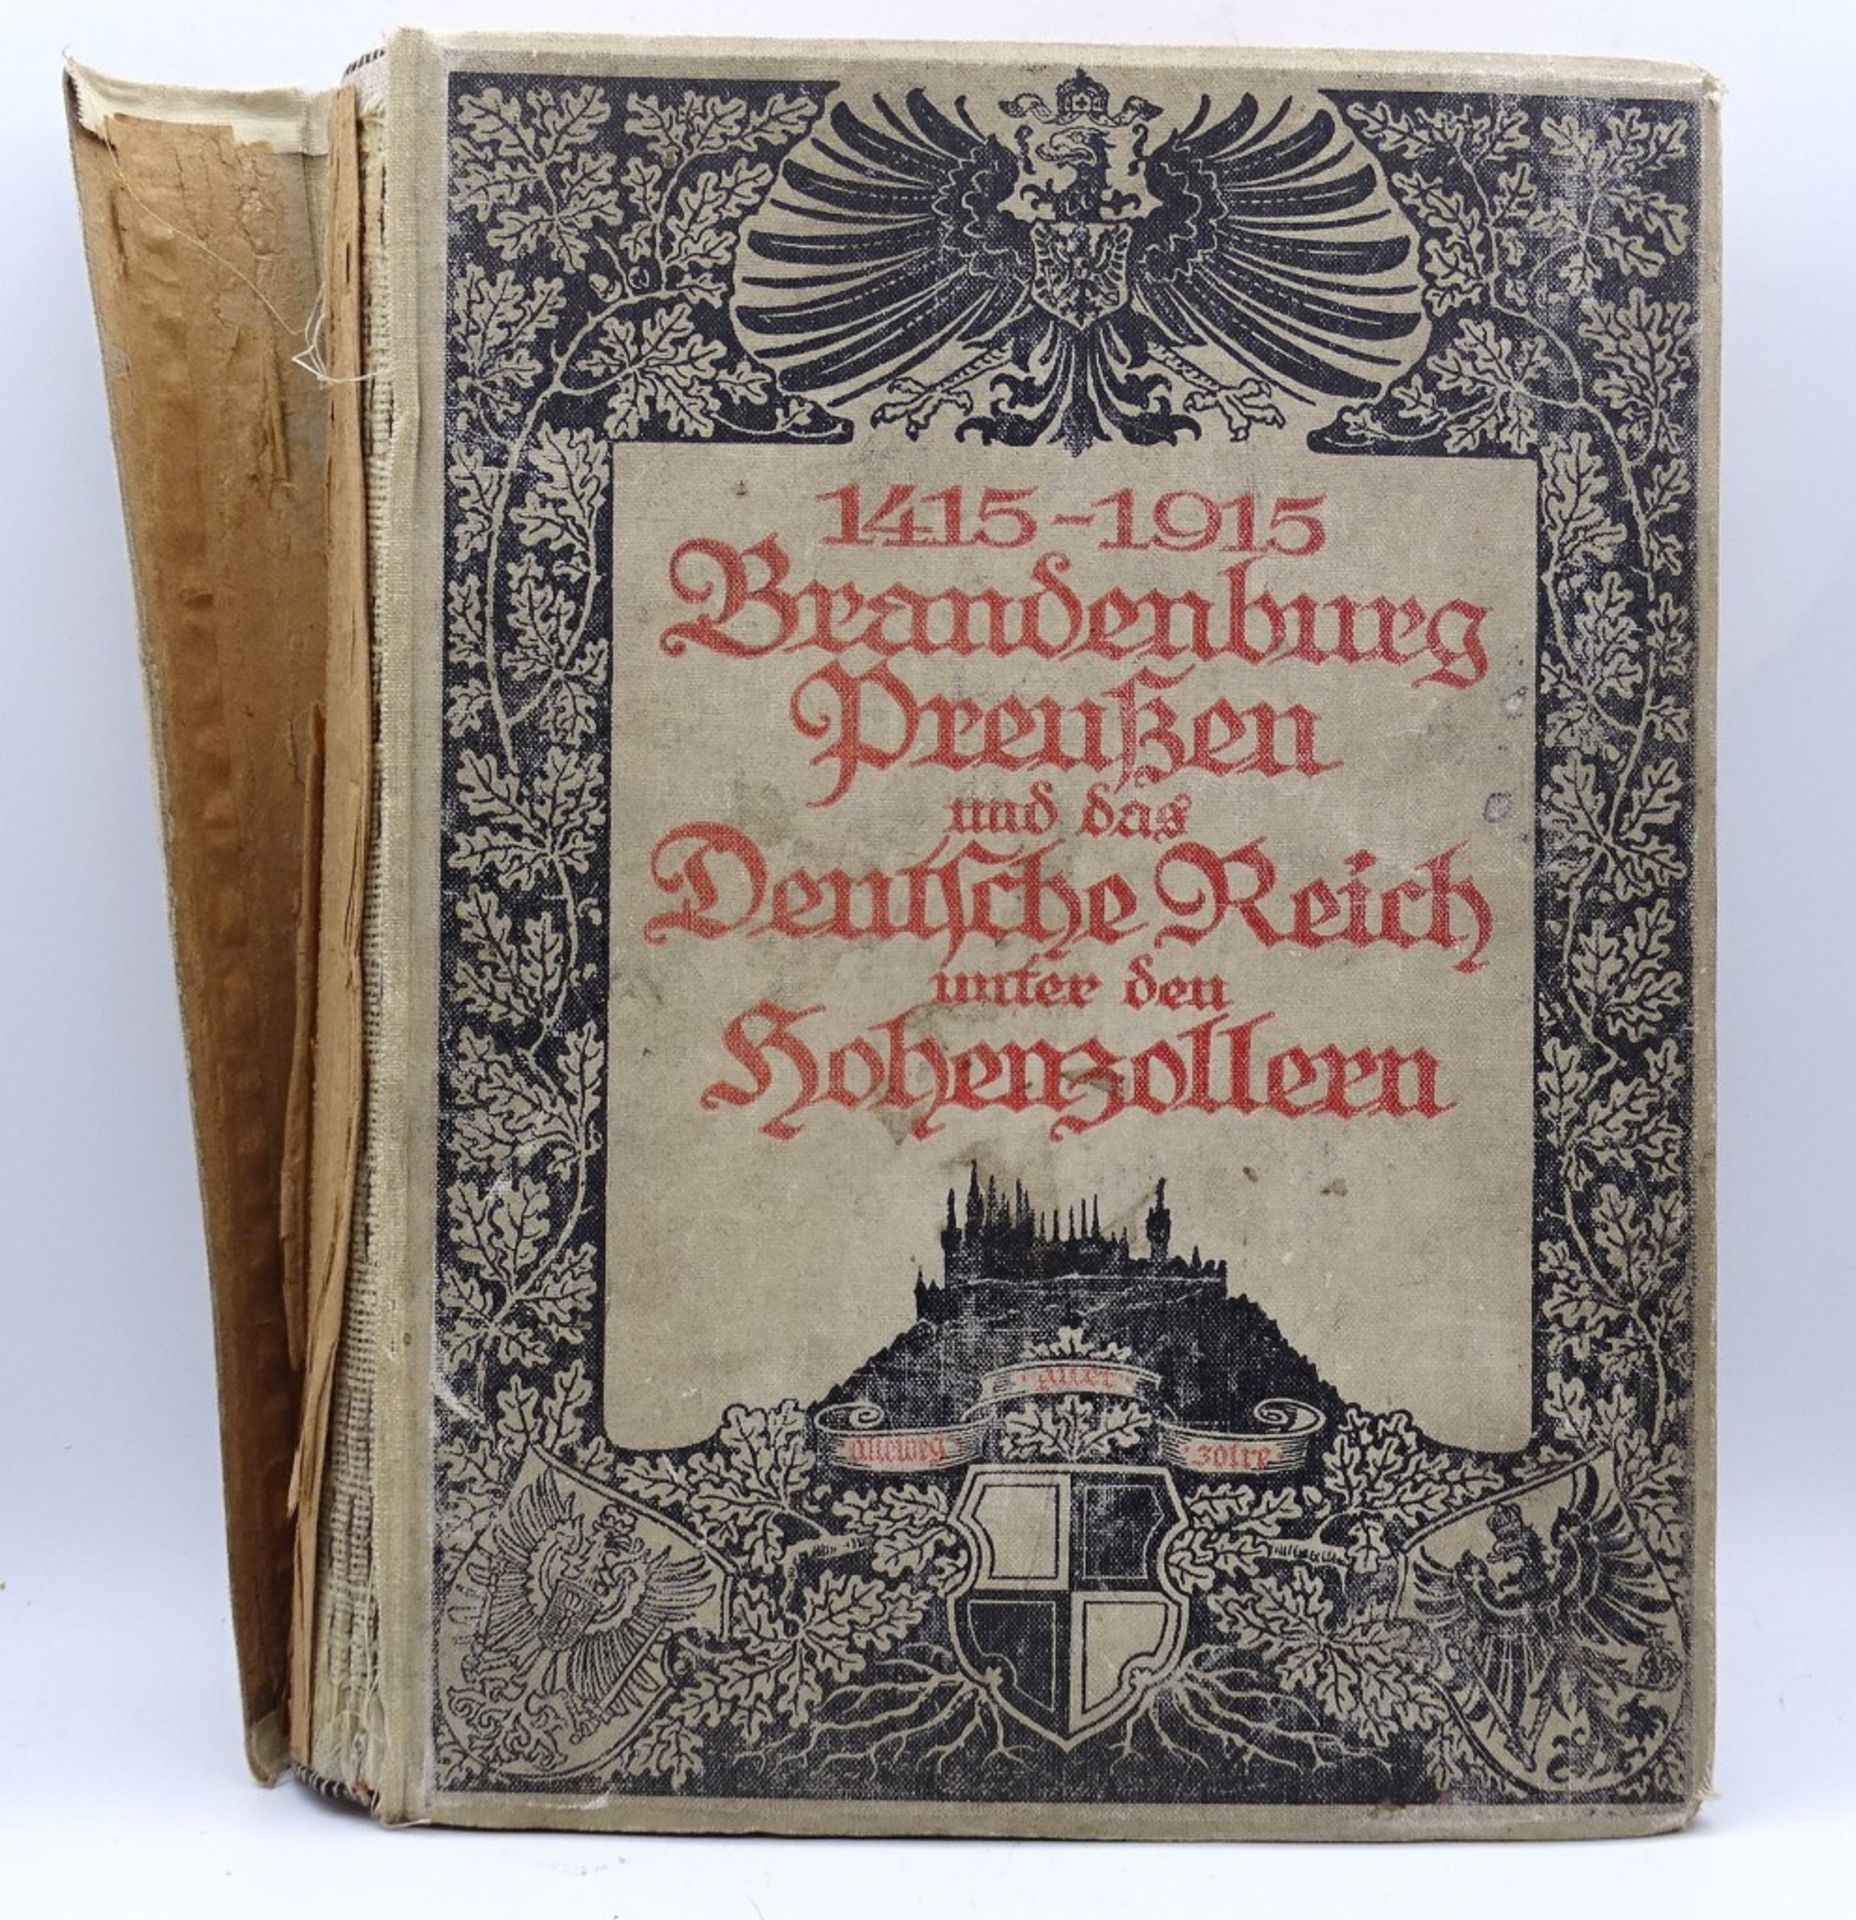 Brandenburg Preußen und das Deutsche Reich unter den Hohenzollern,mit 48 Vollbildern, 1415-1915 ,E